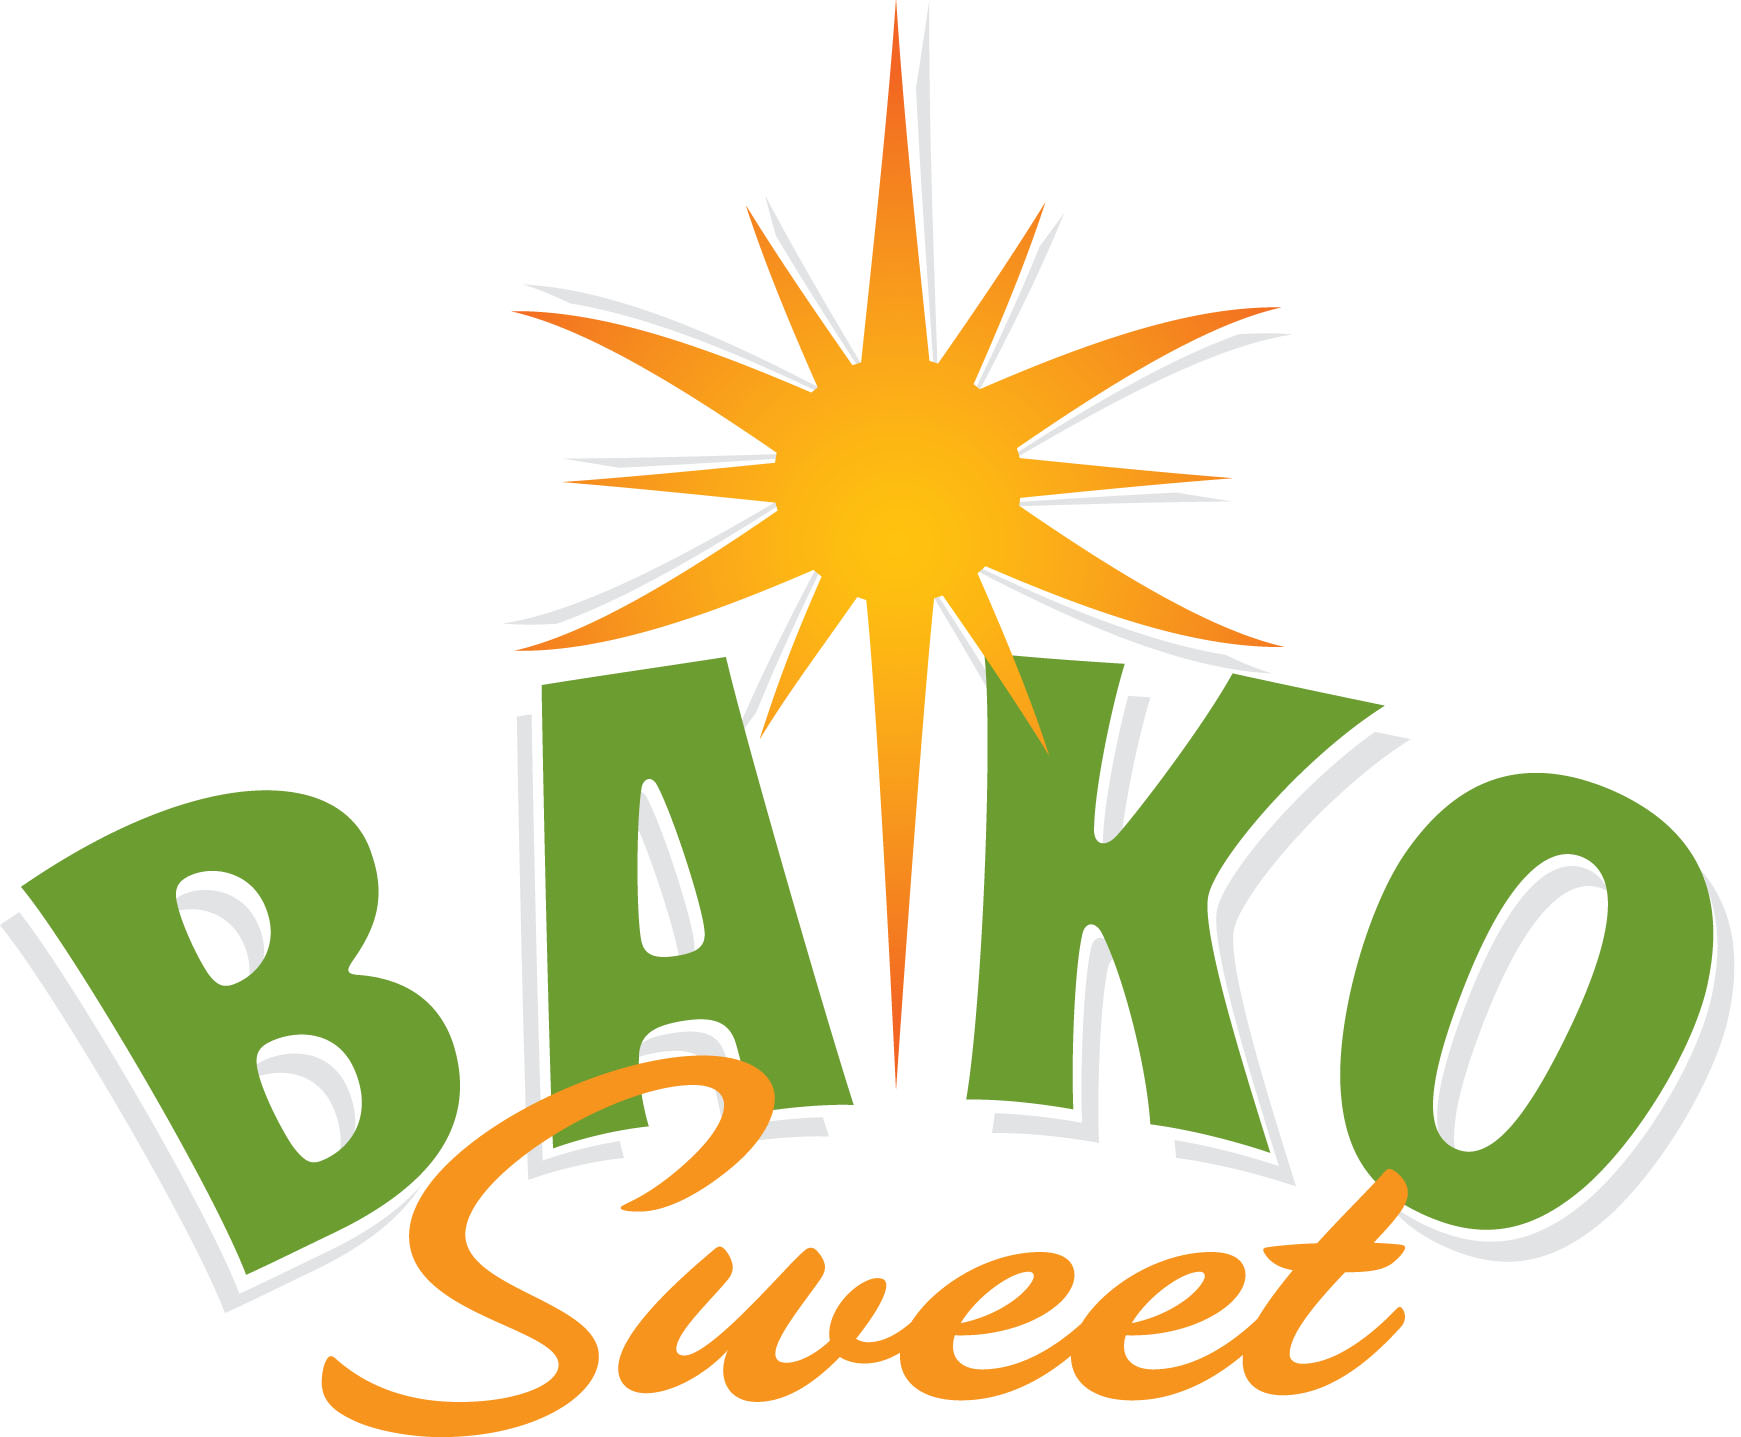 Bako Sweet Logo